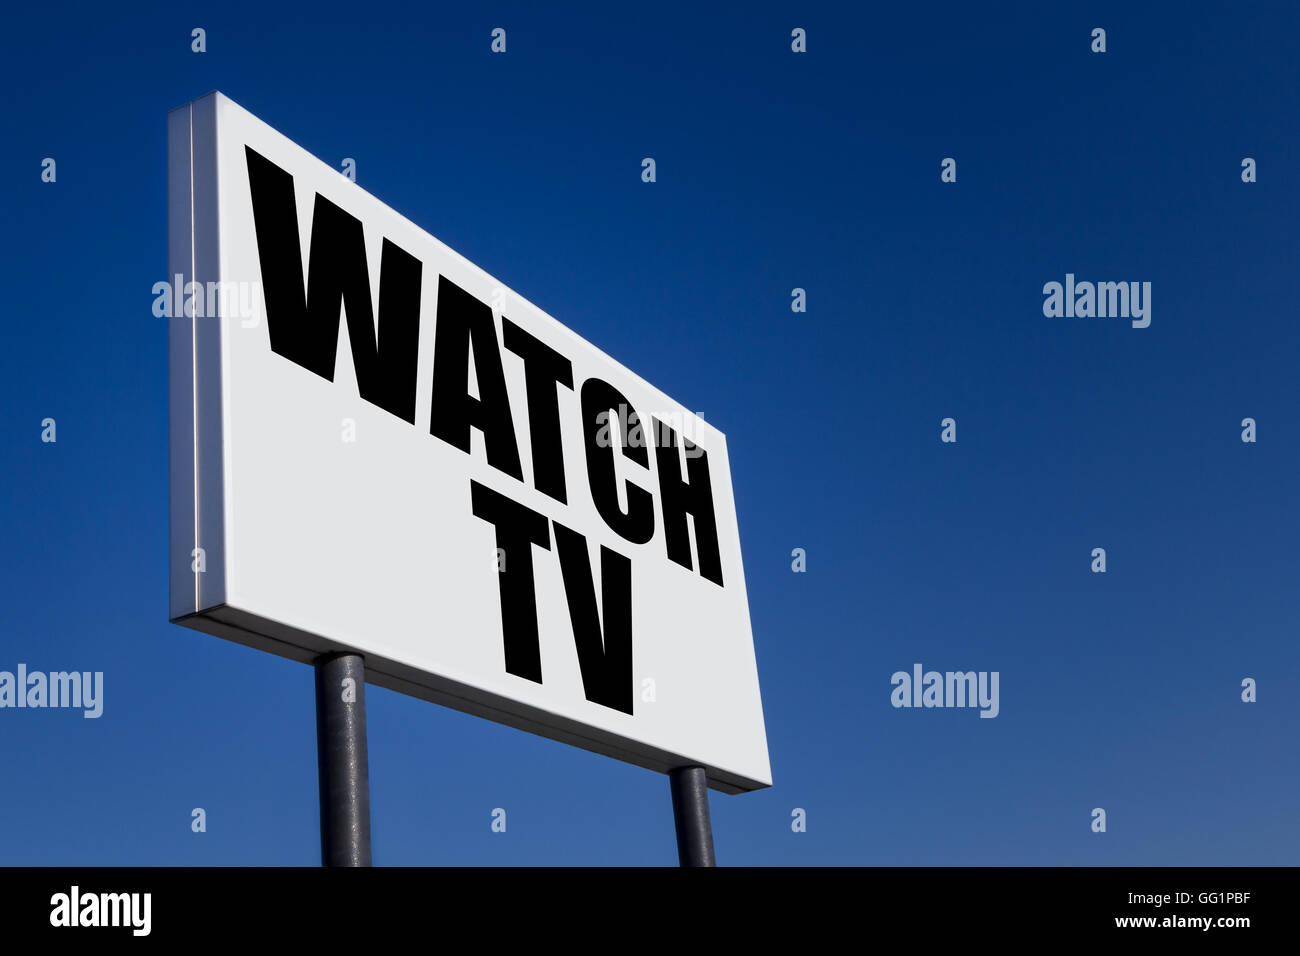 Grande pannello di annunci, goffrato con il messaggio "Watch TV", contro il cielo blu. Foto Stock